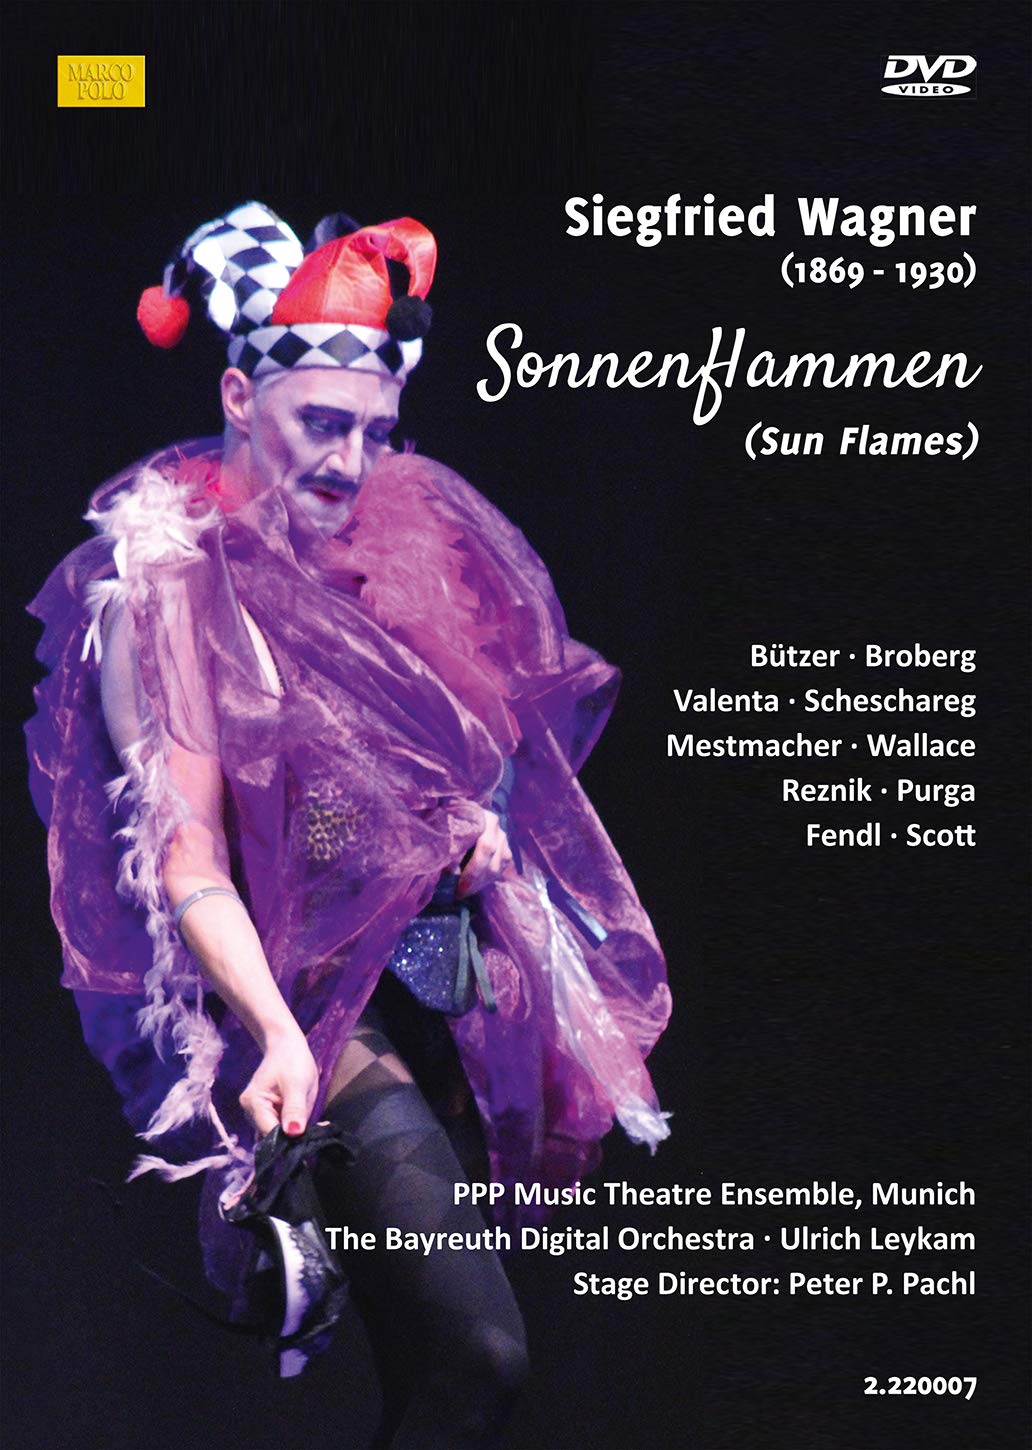 Music Dvd Siegfried Wagner - Sonnenflammen NUOVO SIGILLATO, EDIZIONE DEL 21/12/2020 SUBITO DISPONIBILE